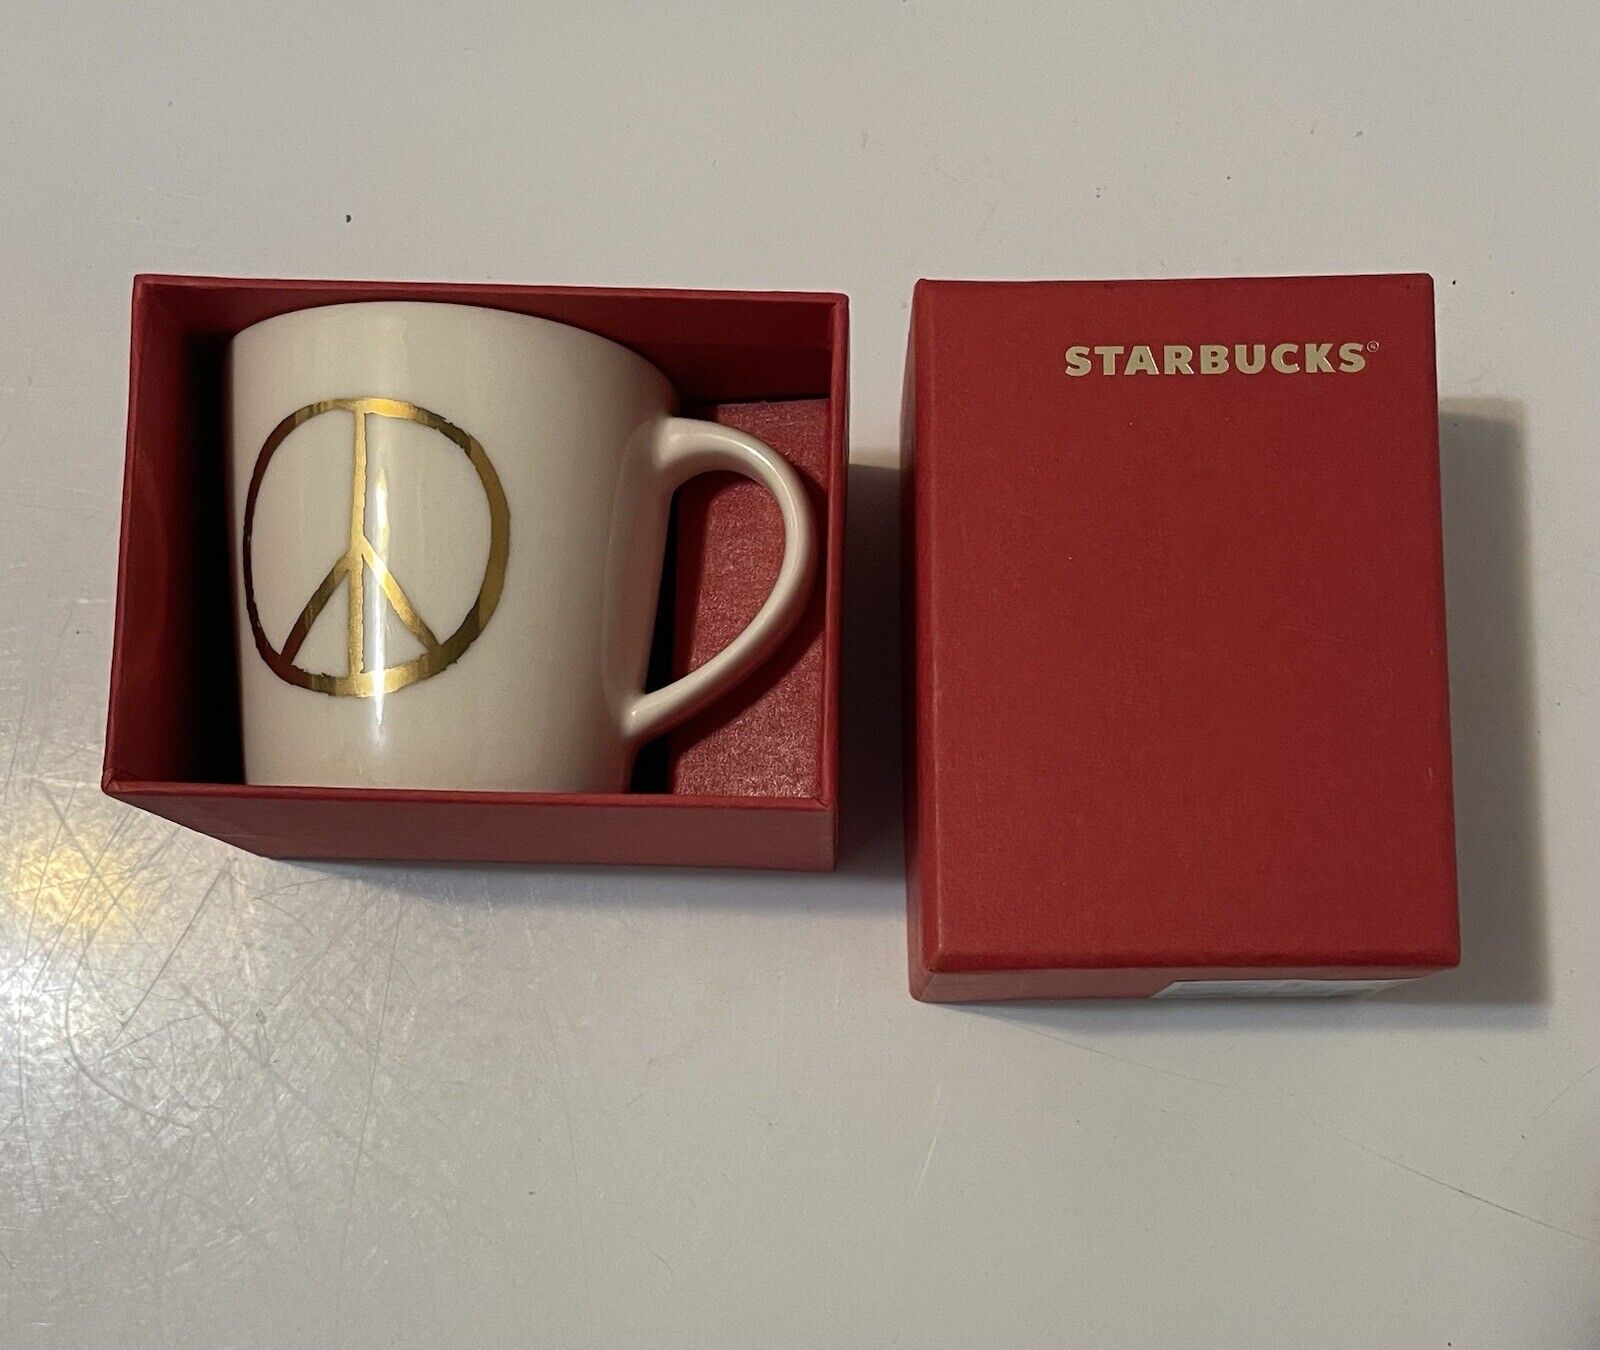 Starbucks Coffee Espresso Gold Peace Sign Small Mug/Cup 3oz, 2015 In Box